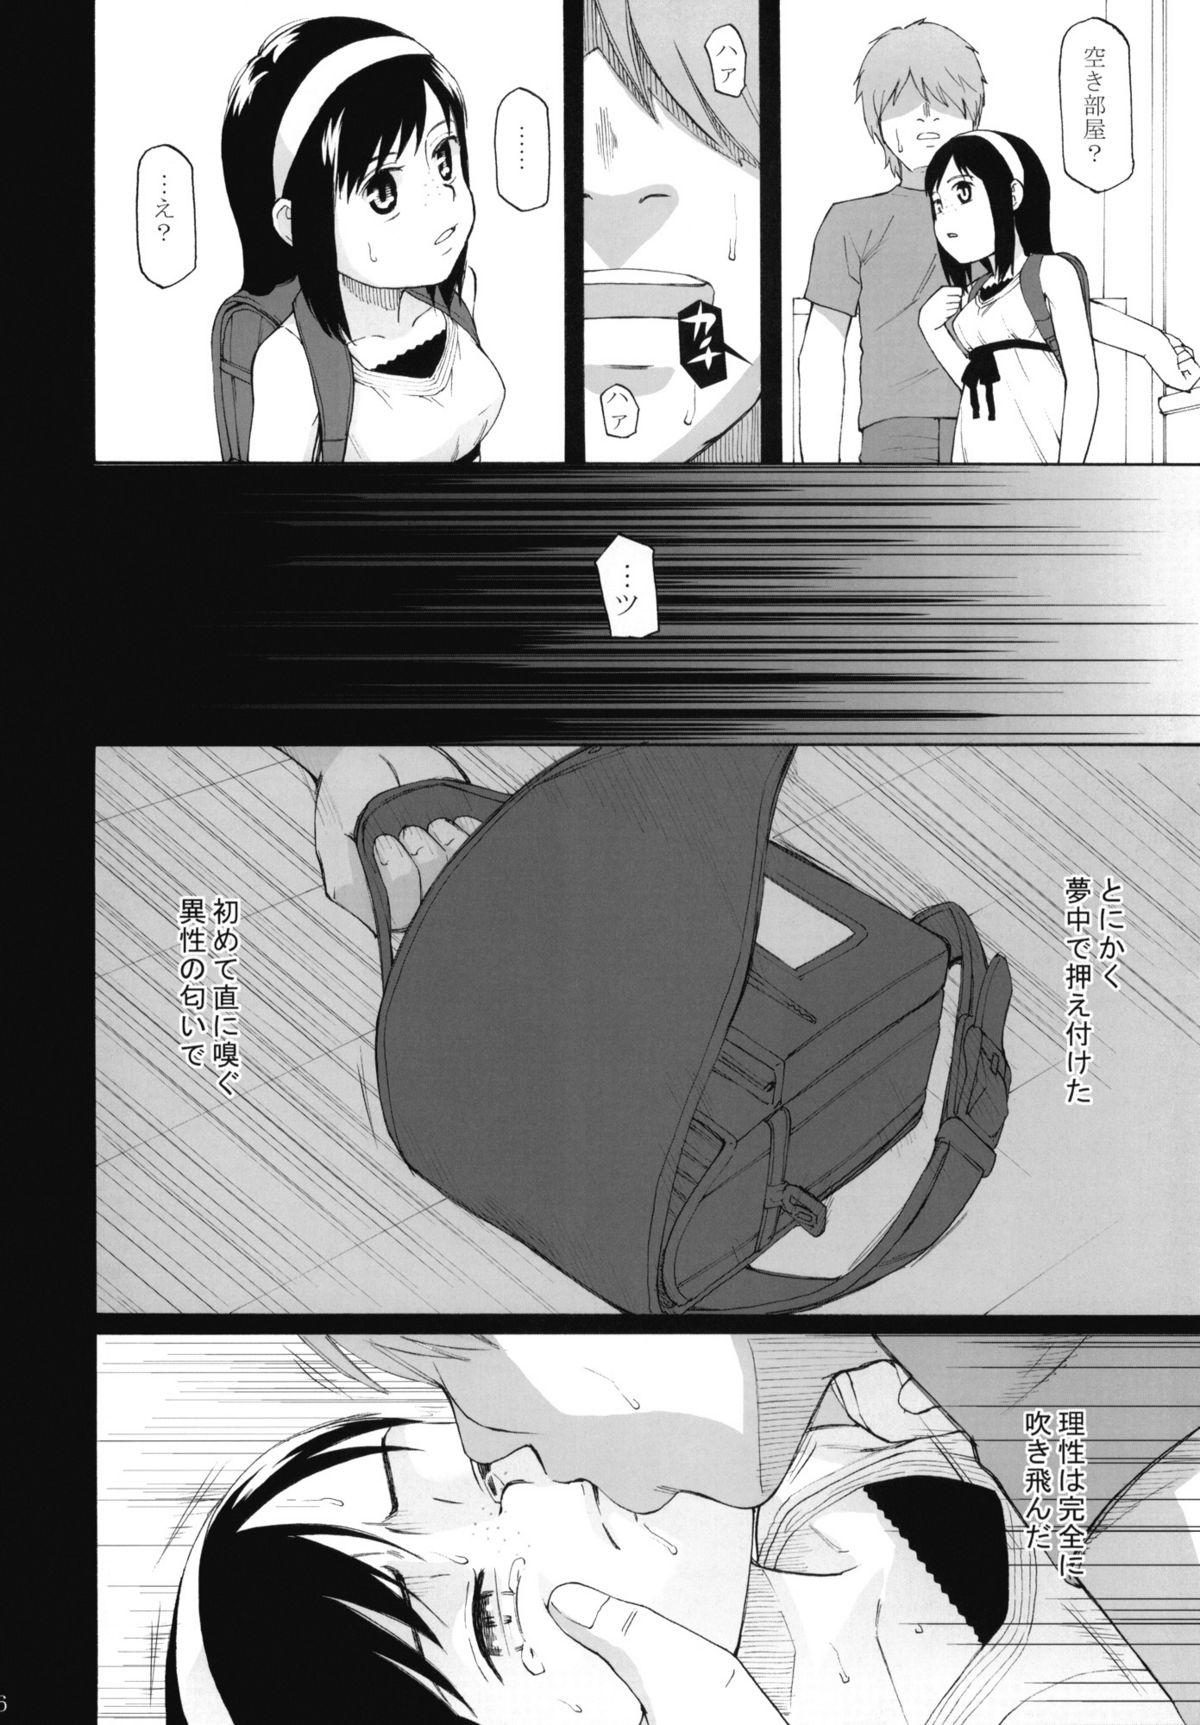 Suck Cock Anemone Shoukougun 1.02 - Anemone Syndrome 1.02 Retro - Page 7